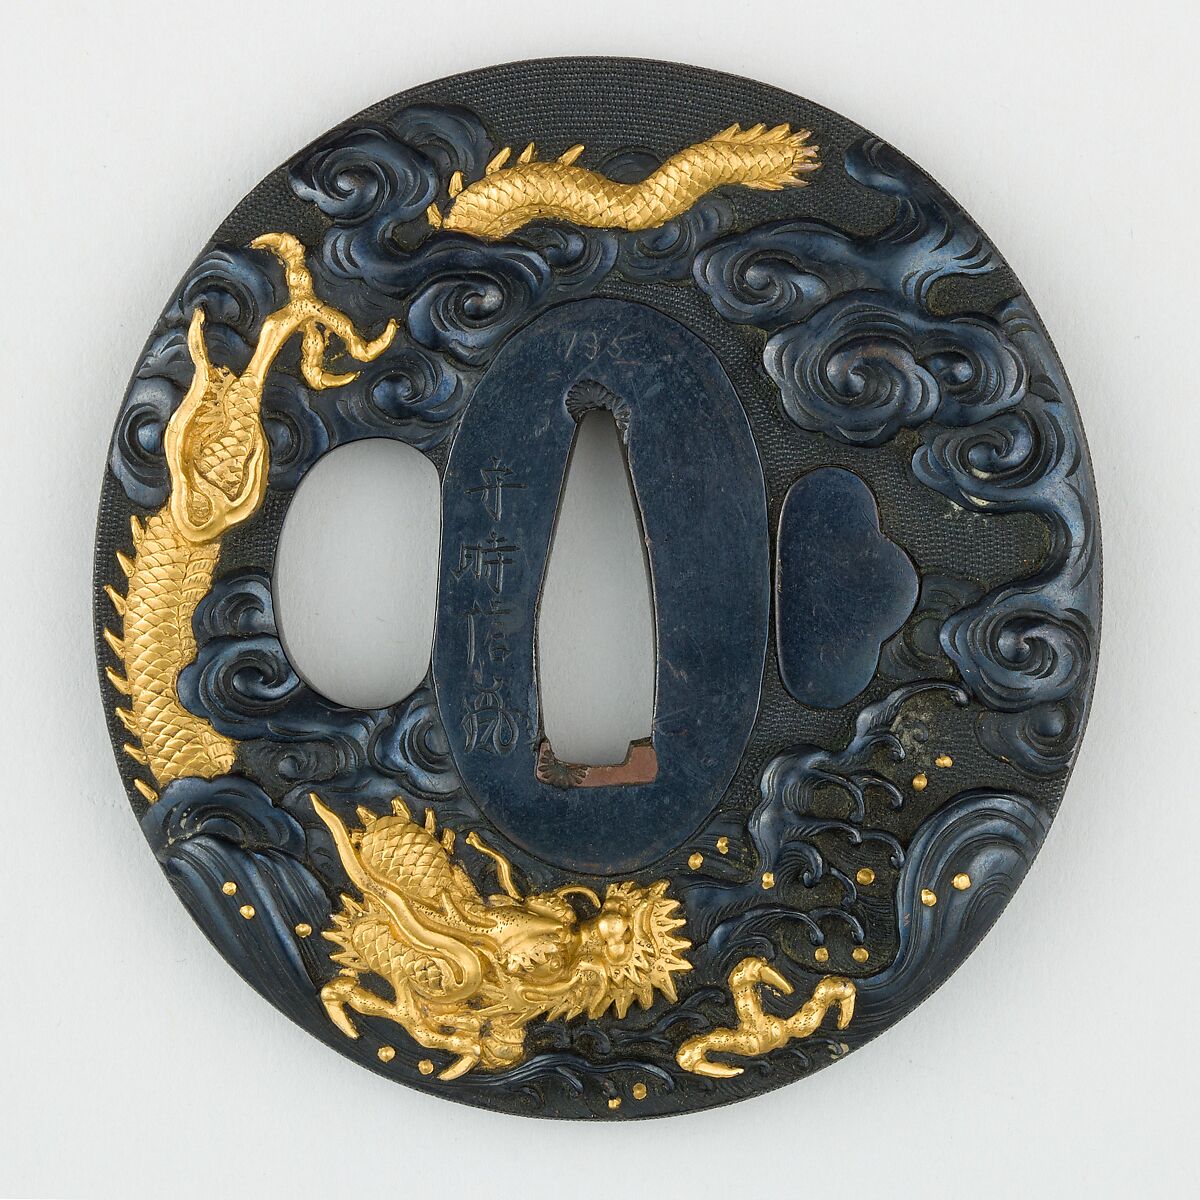 Sword Guard (<i>Tsuba</i>) Depicting Dragon Between Waves (波龍図鐔), Copper-gold alloy (shakudō), gold, copper, Japanese 